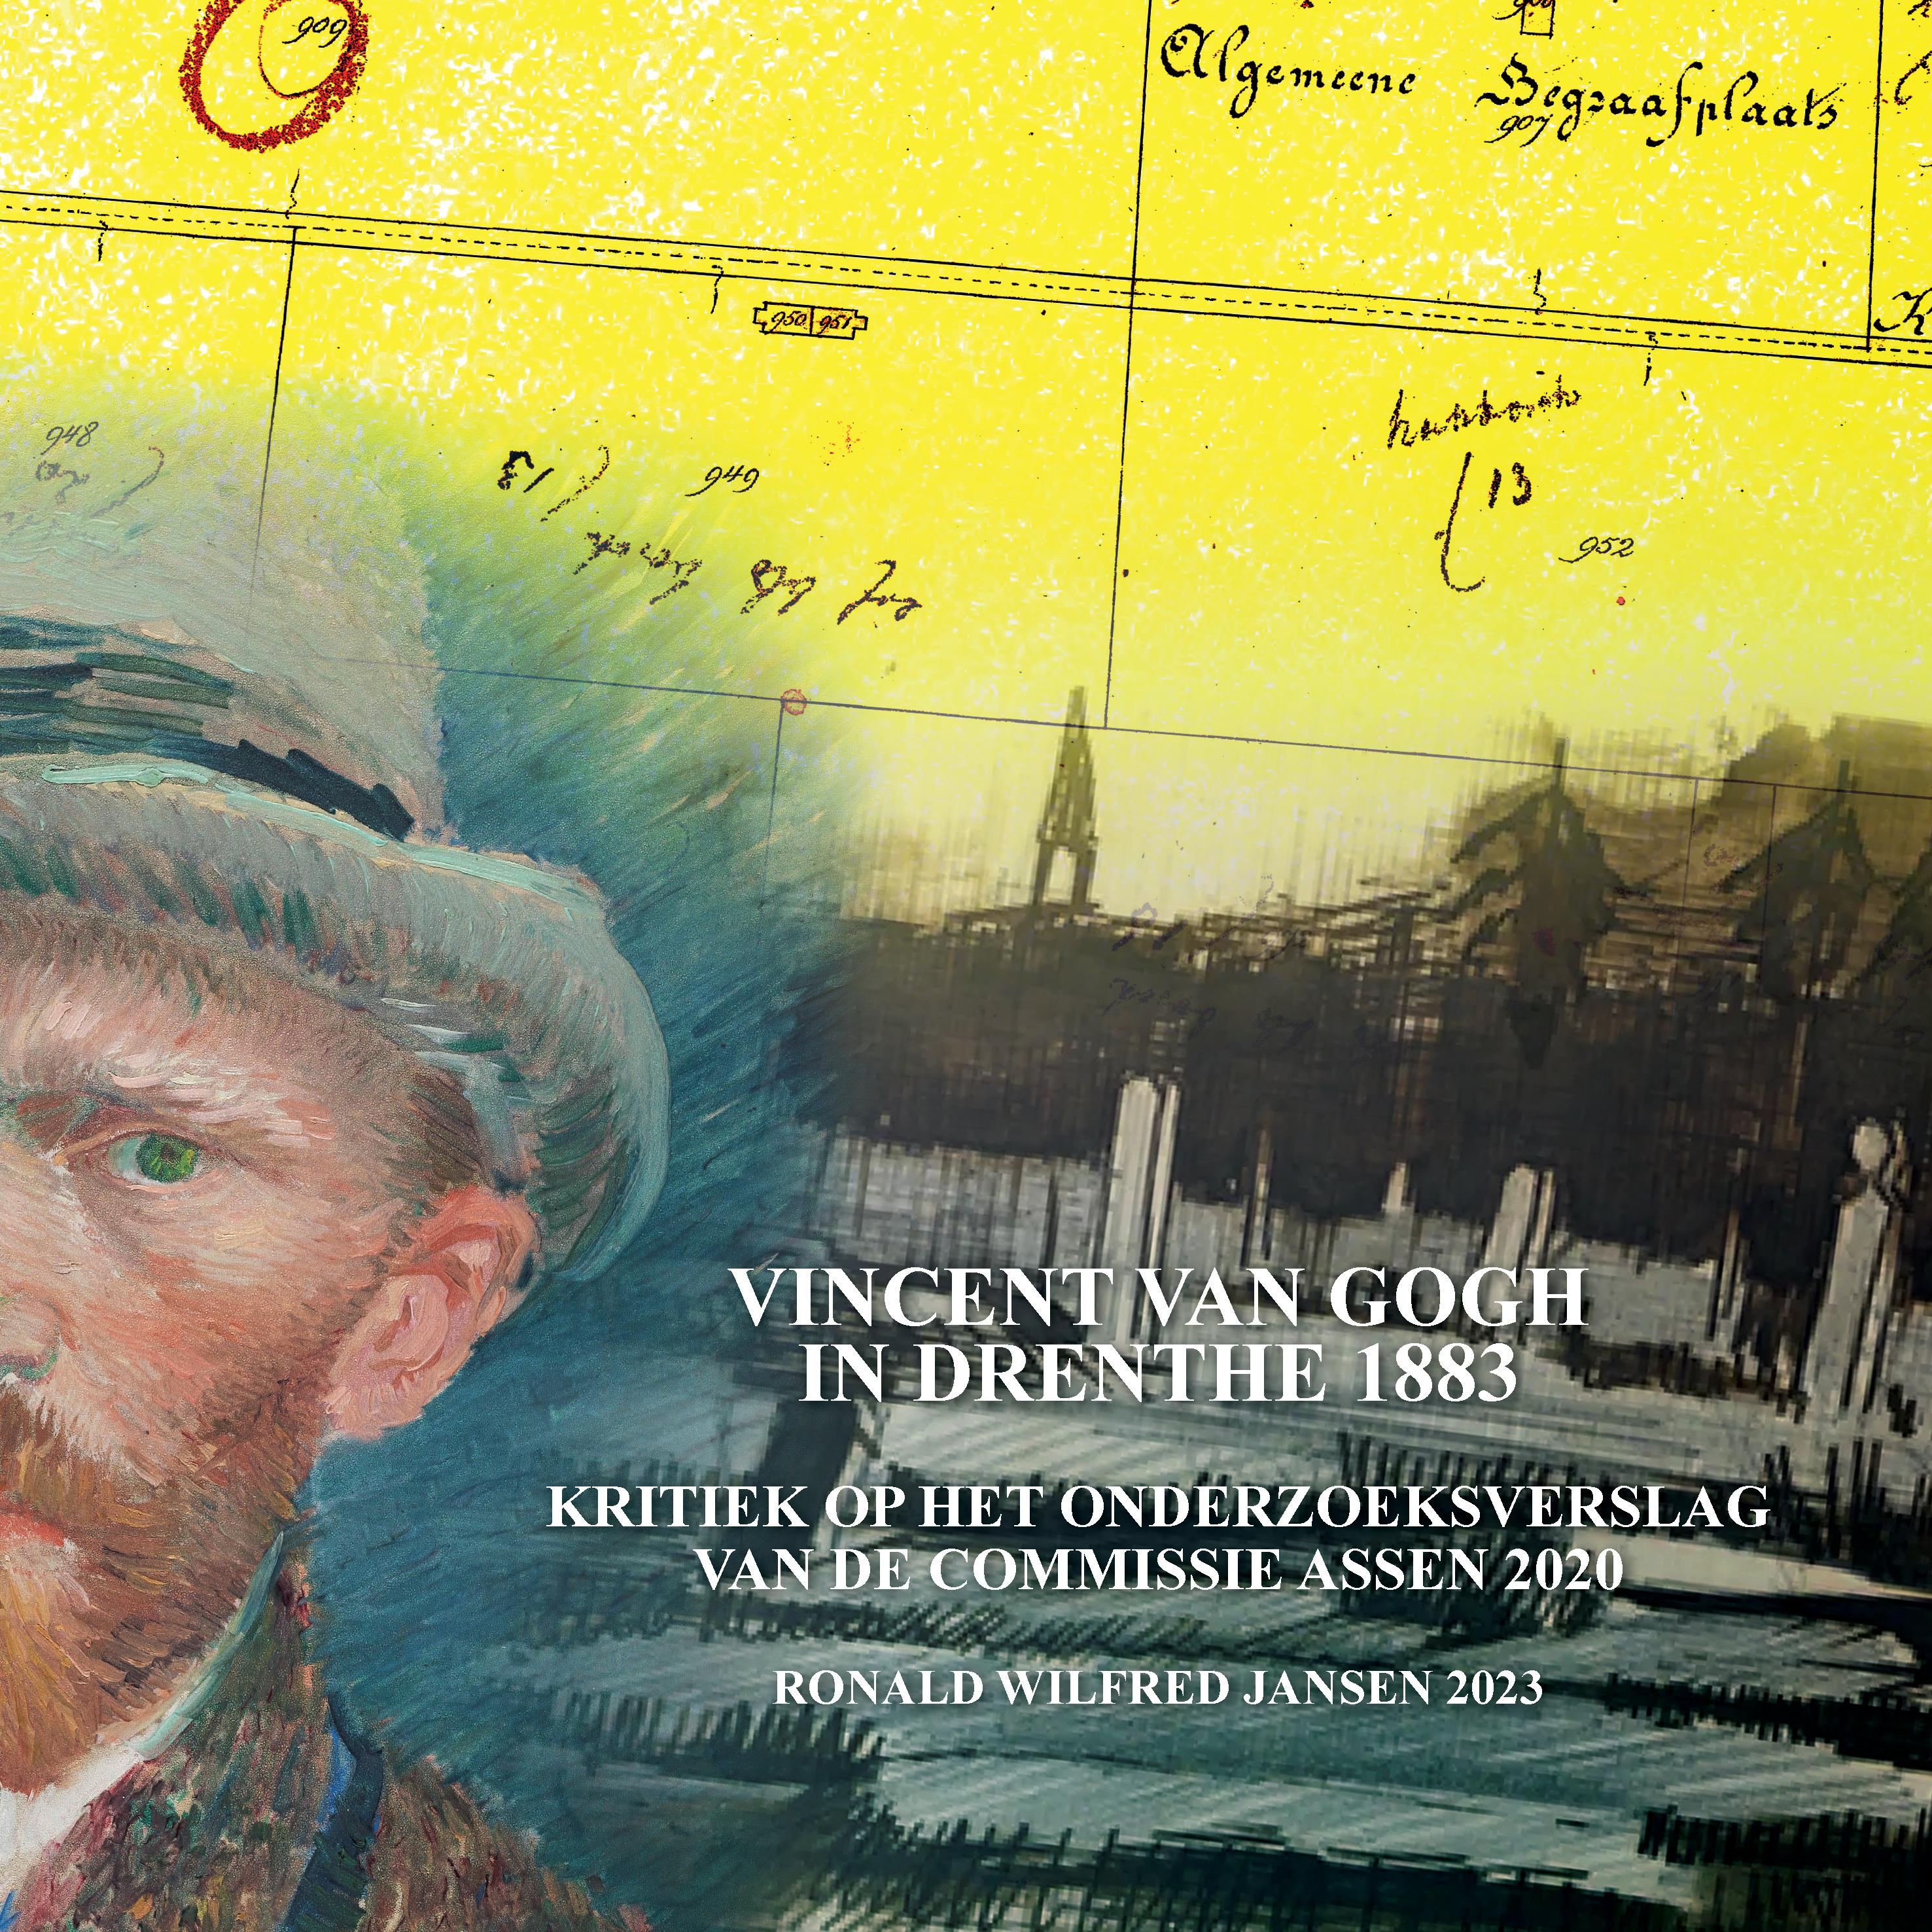 Vincent van Gogh in Drenthe 1883